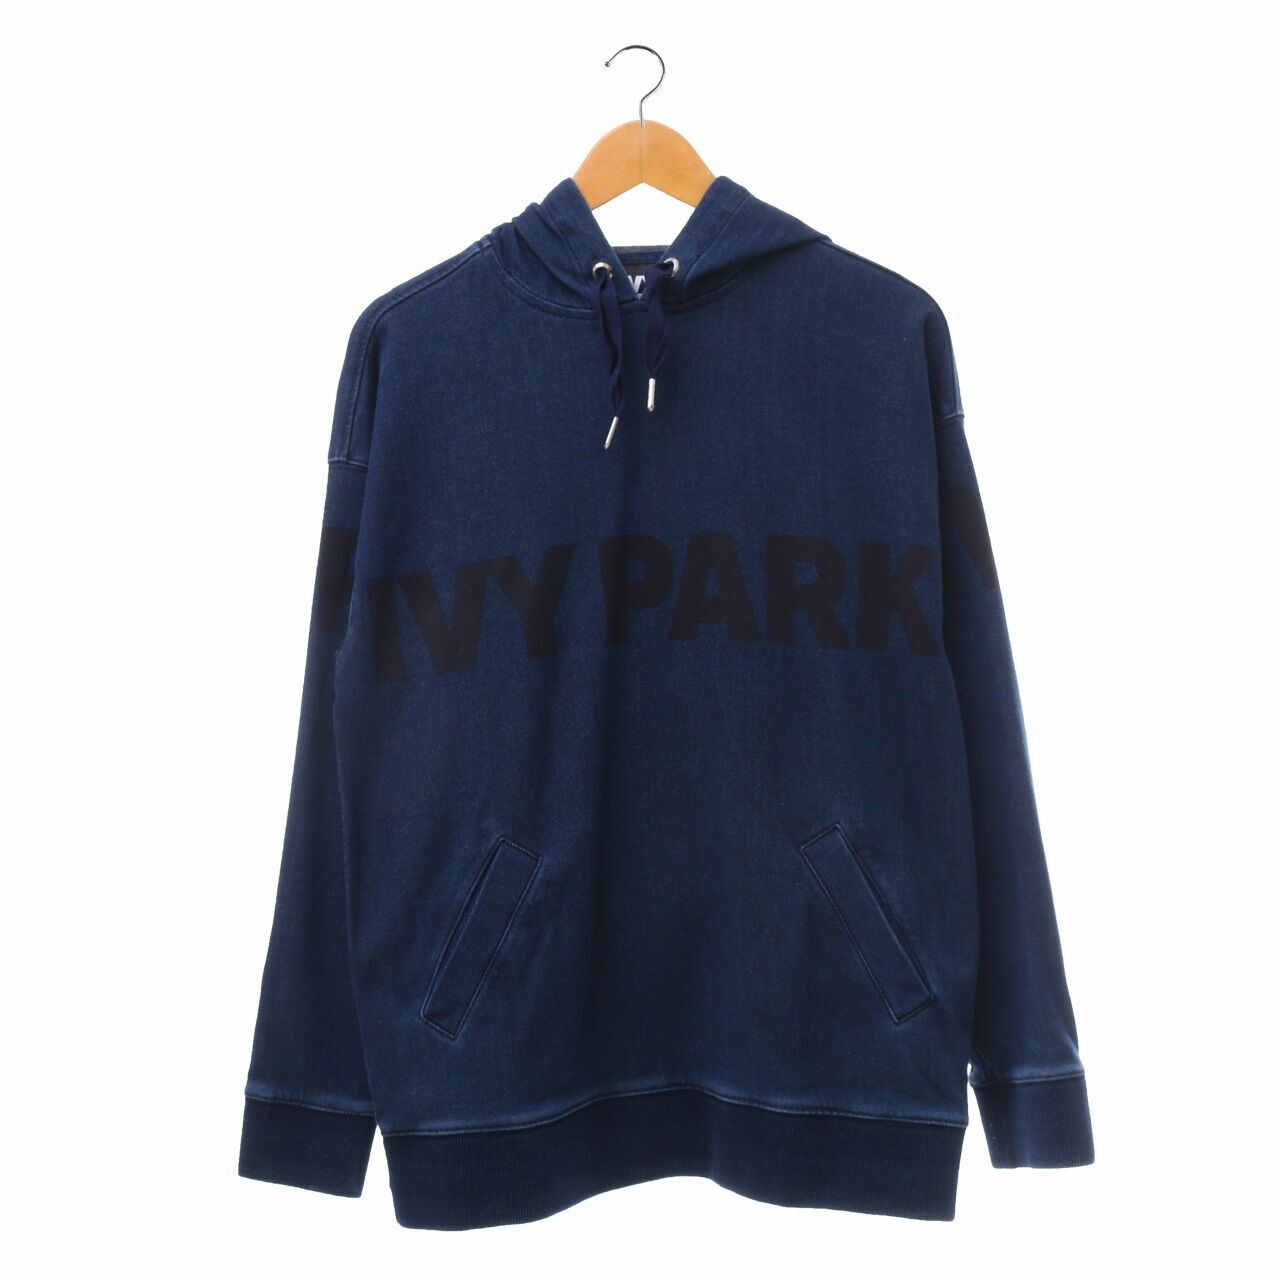 Ivy Park Dark Blue Sweater